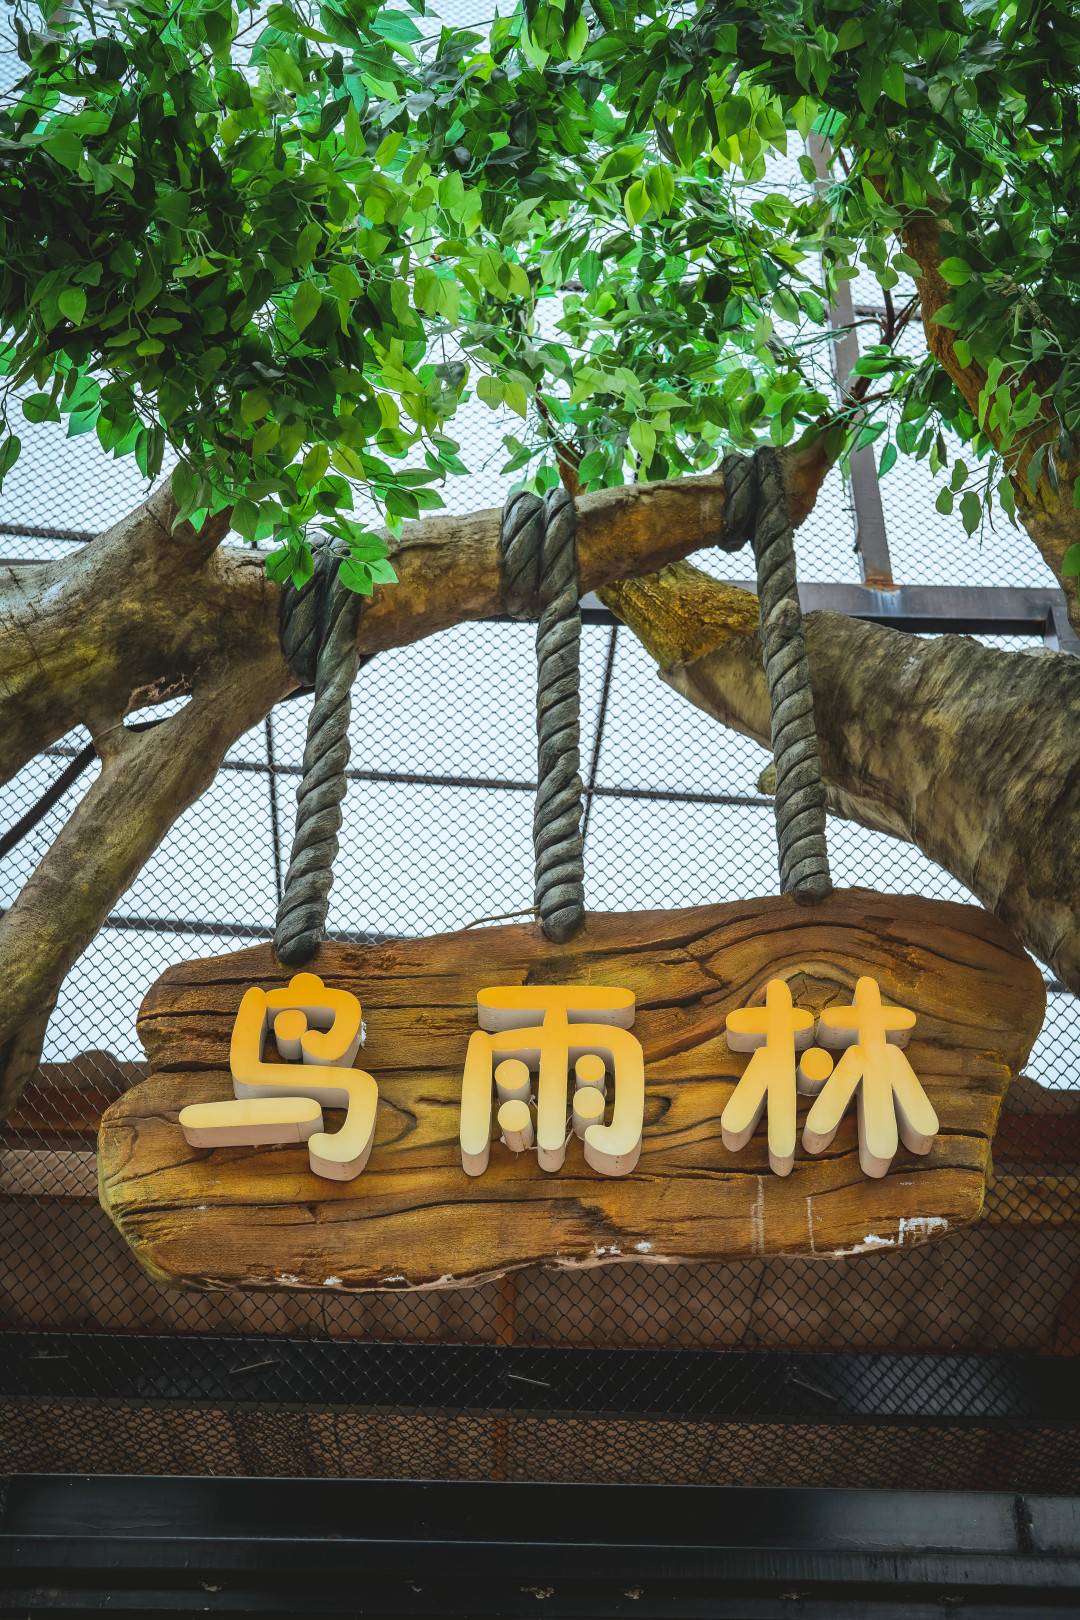 【限时特惠】广州融创欢腾国际马戏+明星动物园双人票（6月18-7月31）99元抢购